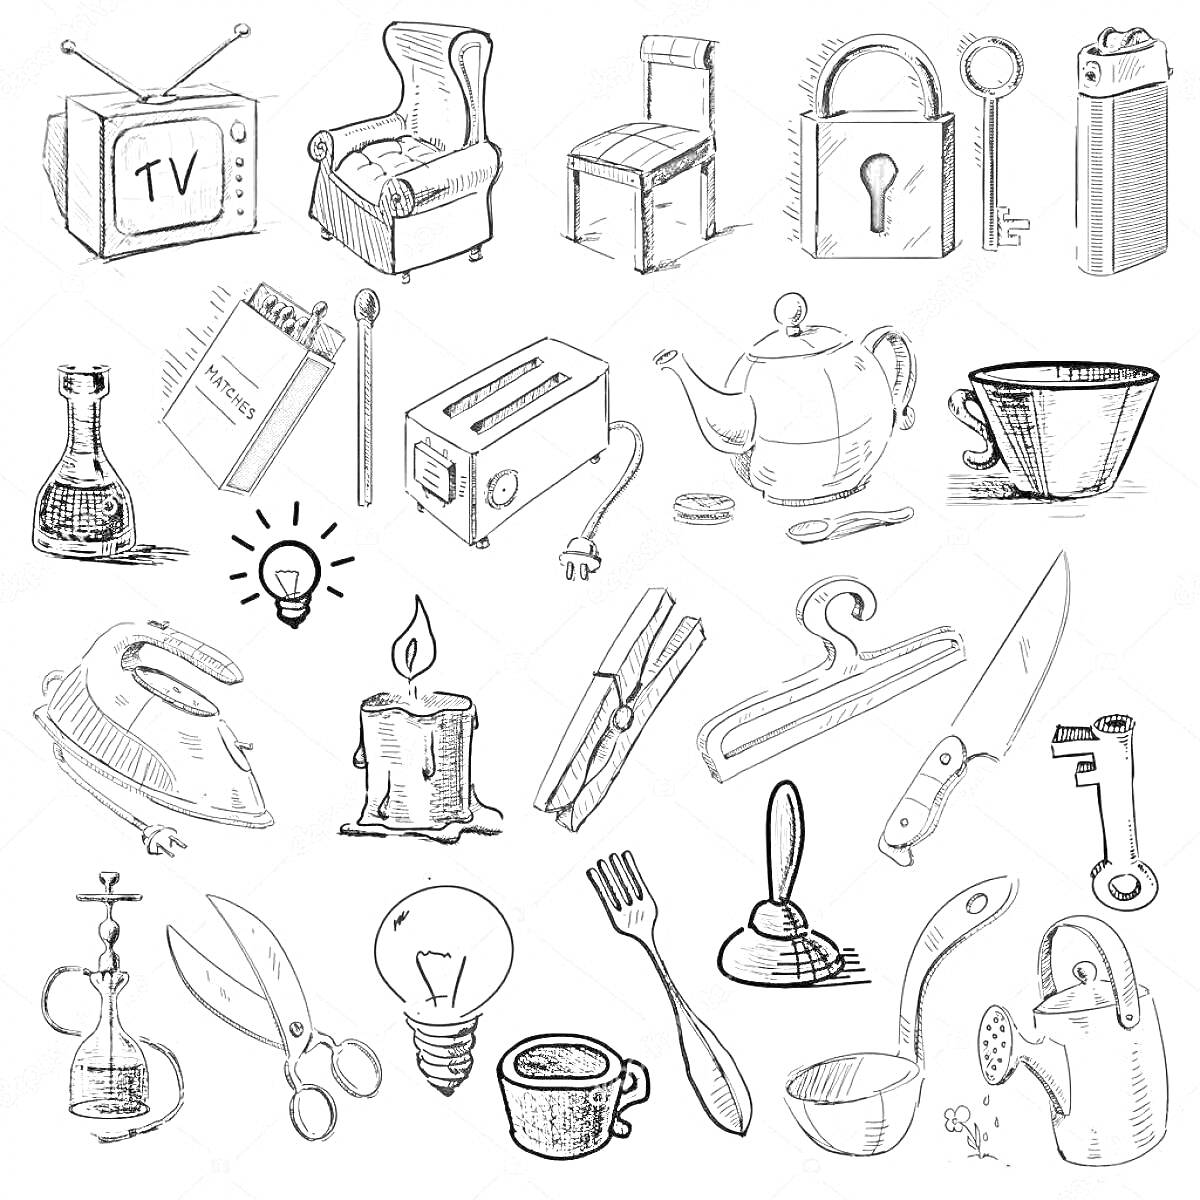 Домашние опасности: телевизор, кресло, стул, замок с ключом, зажигалка, бутылка с жидкостью, блокнот, тостер, чайник, чашка, утюг, лампа, свеча, прищепка, вешалка, нож, ножницы, лампочка, чашка с ложкой, электрическая вилка, распылитель, чашка, клей, вилк